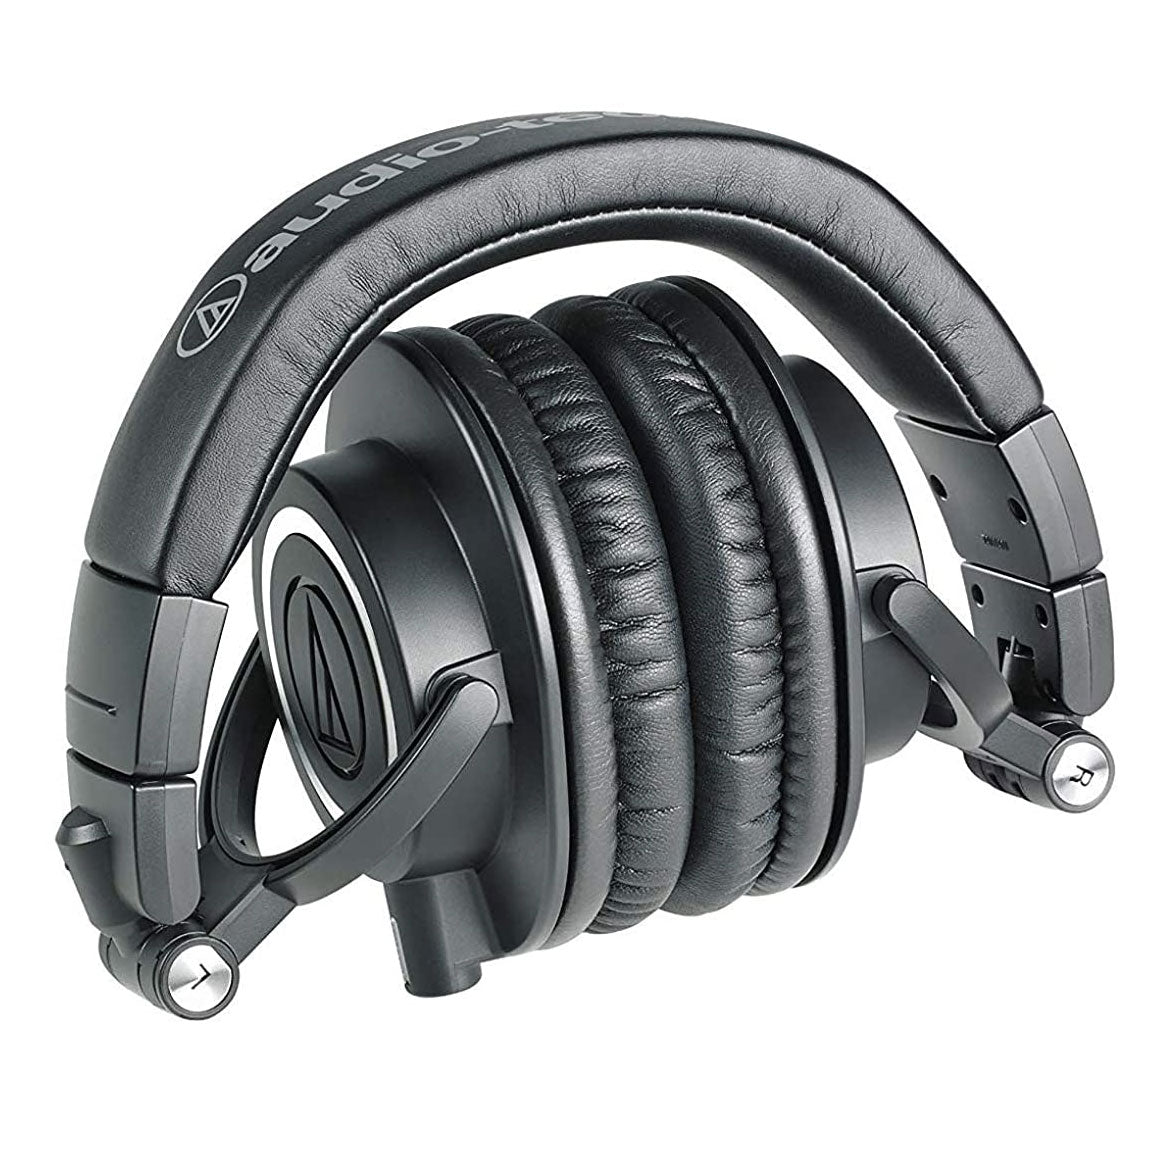 Headphone-Zone-Audio-technica-m50x-black